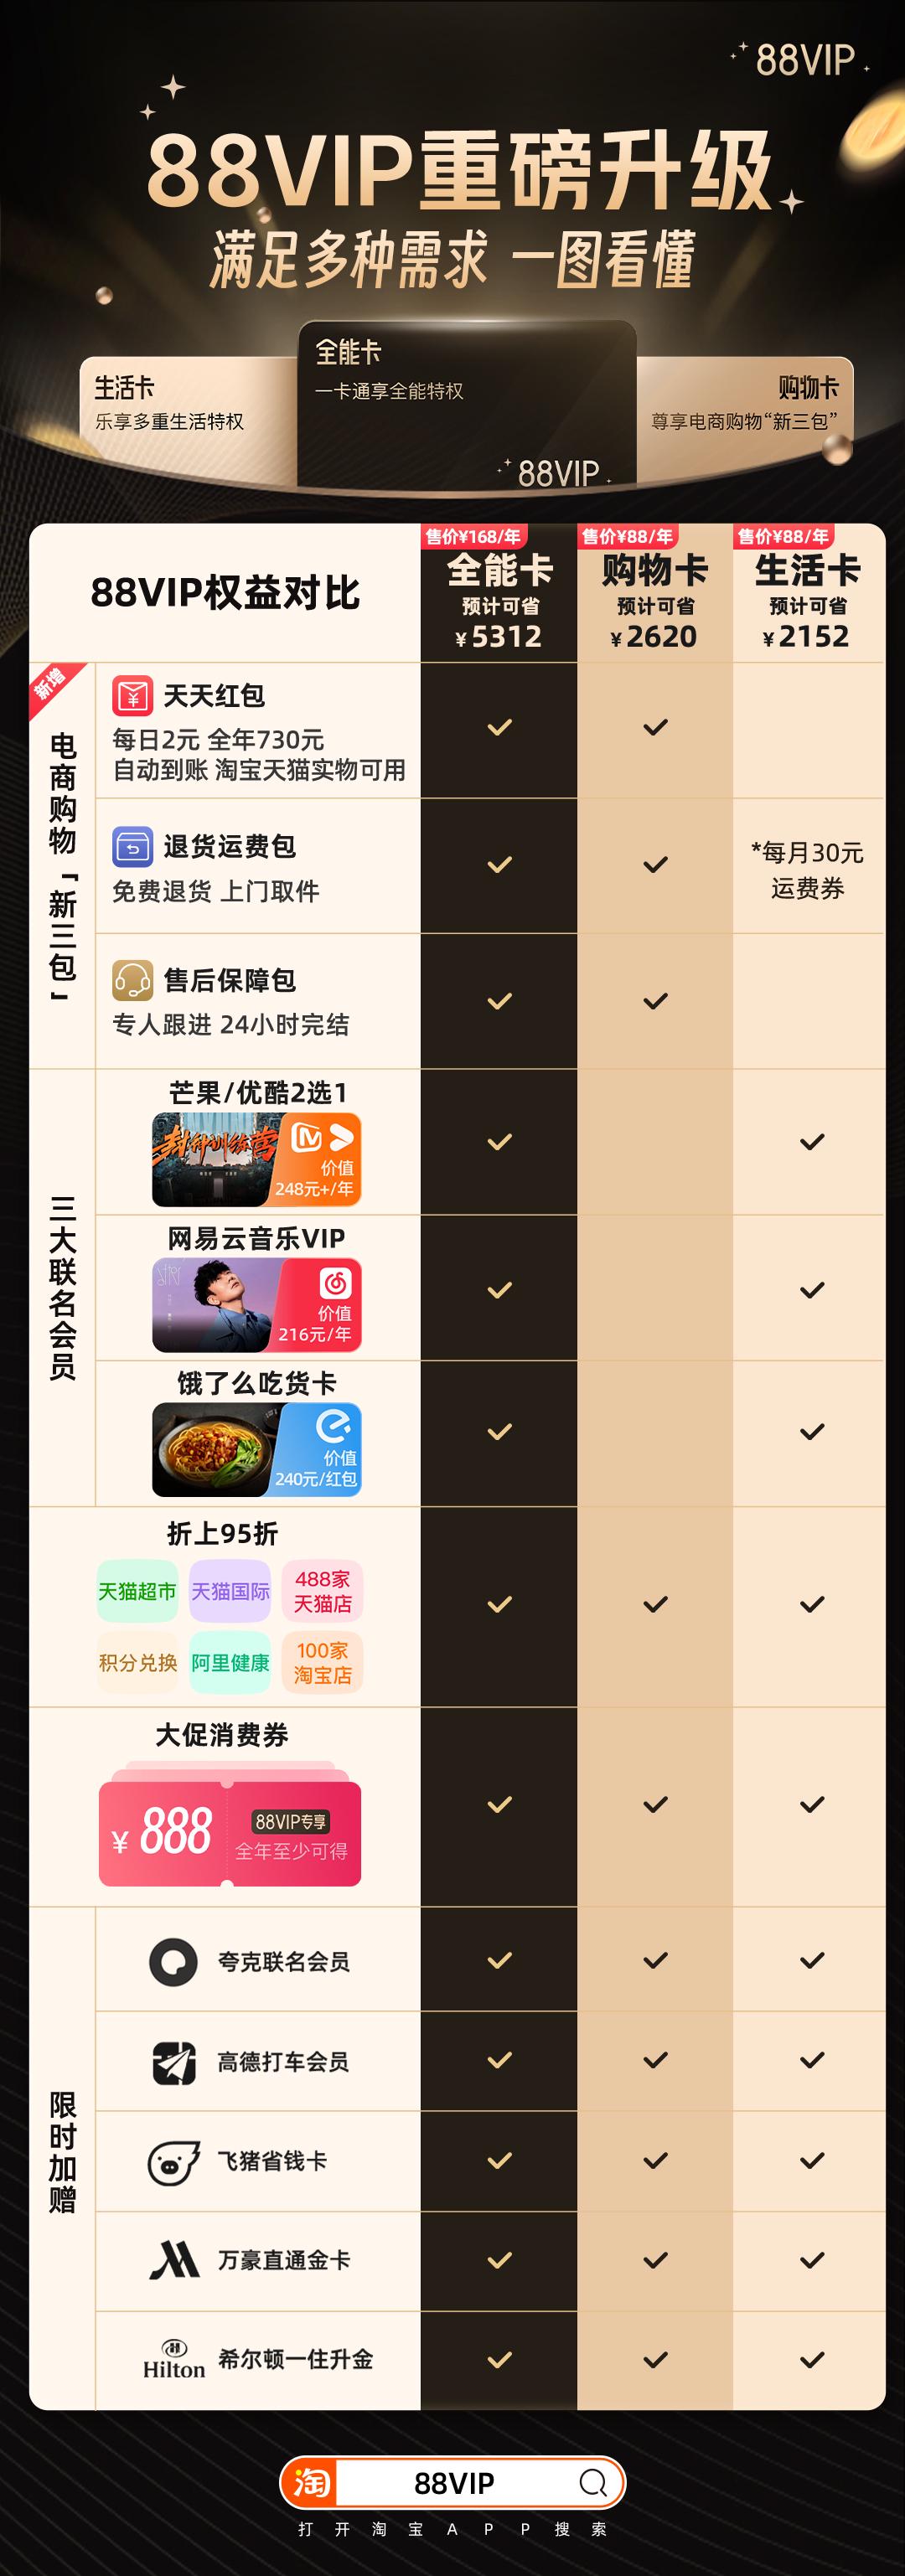 淘宝88VIP晋级日子卡、购物卡、万能卡：新权益全年可省5000元